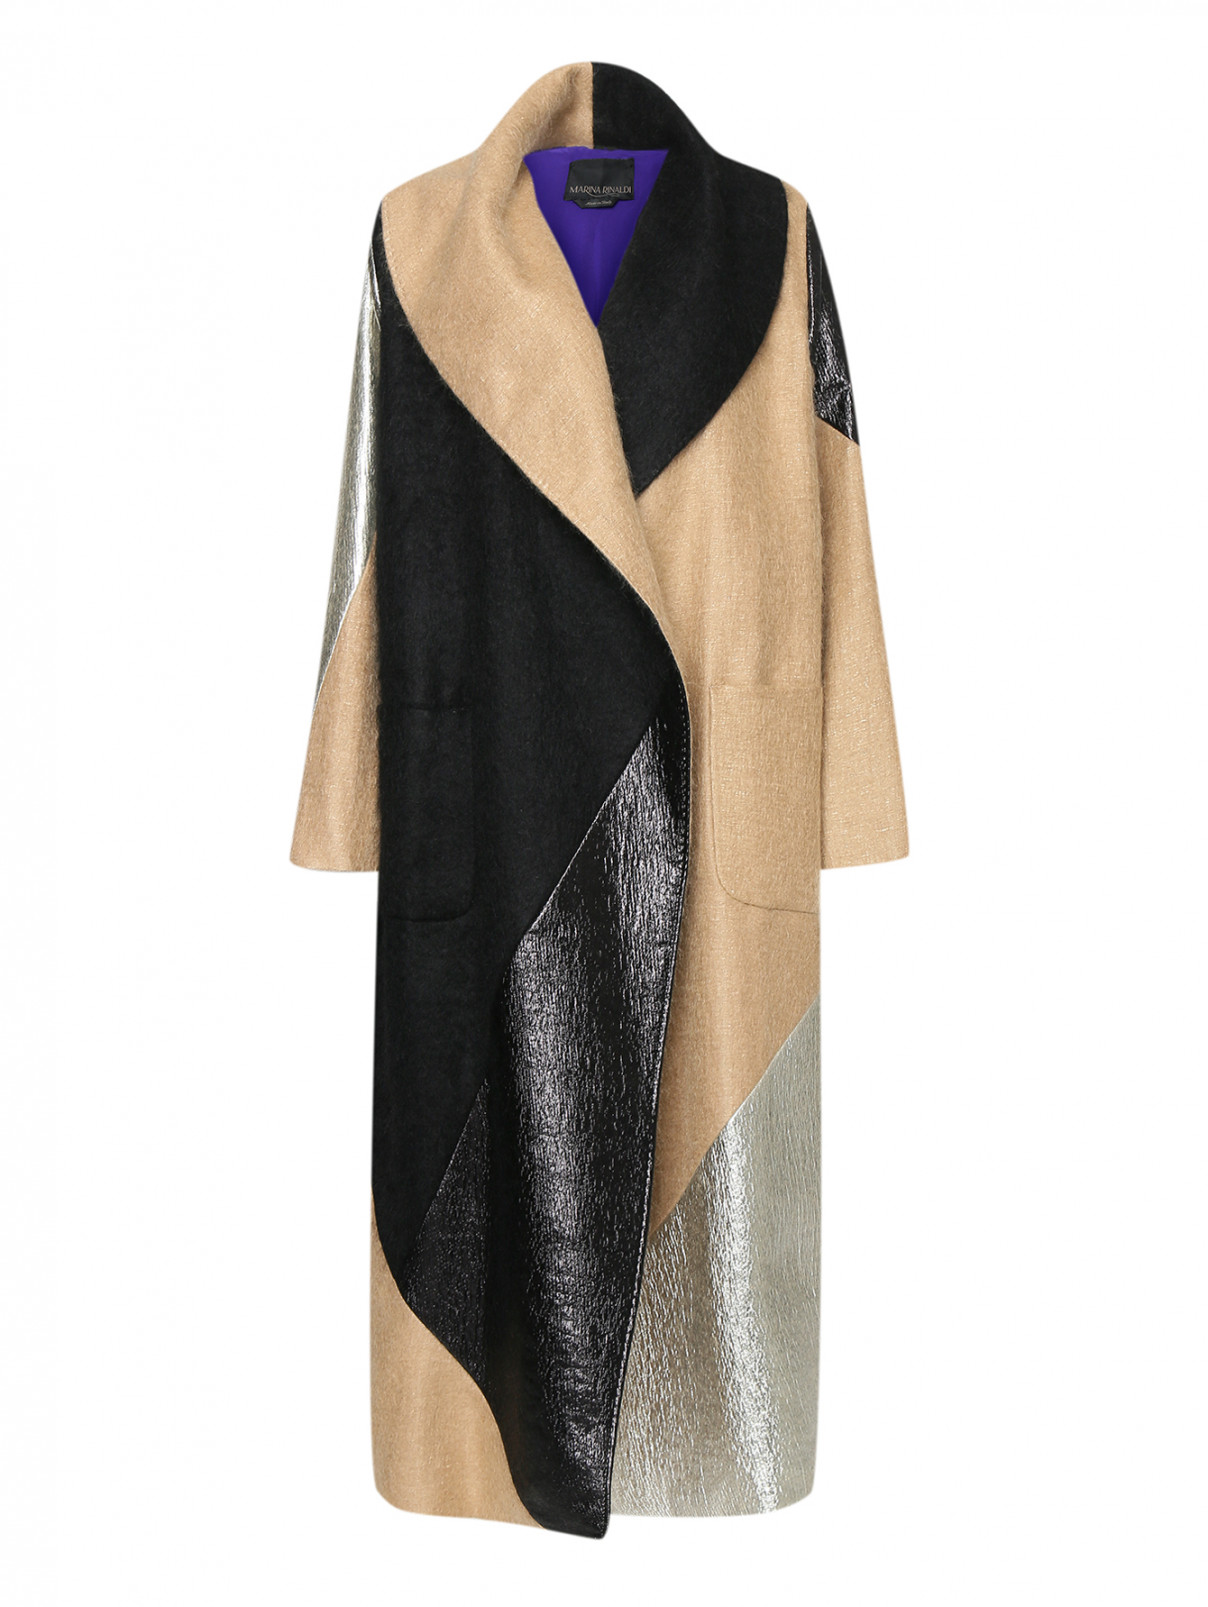 Пальто из шерсти альпака в стиле колорблок Marina Rinaldi  –  Общий вид  – Цвет:  Коричневый